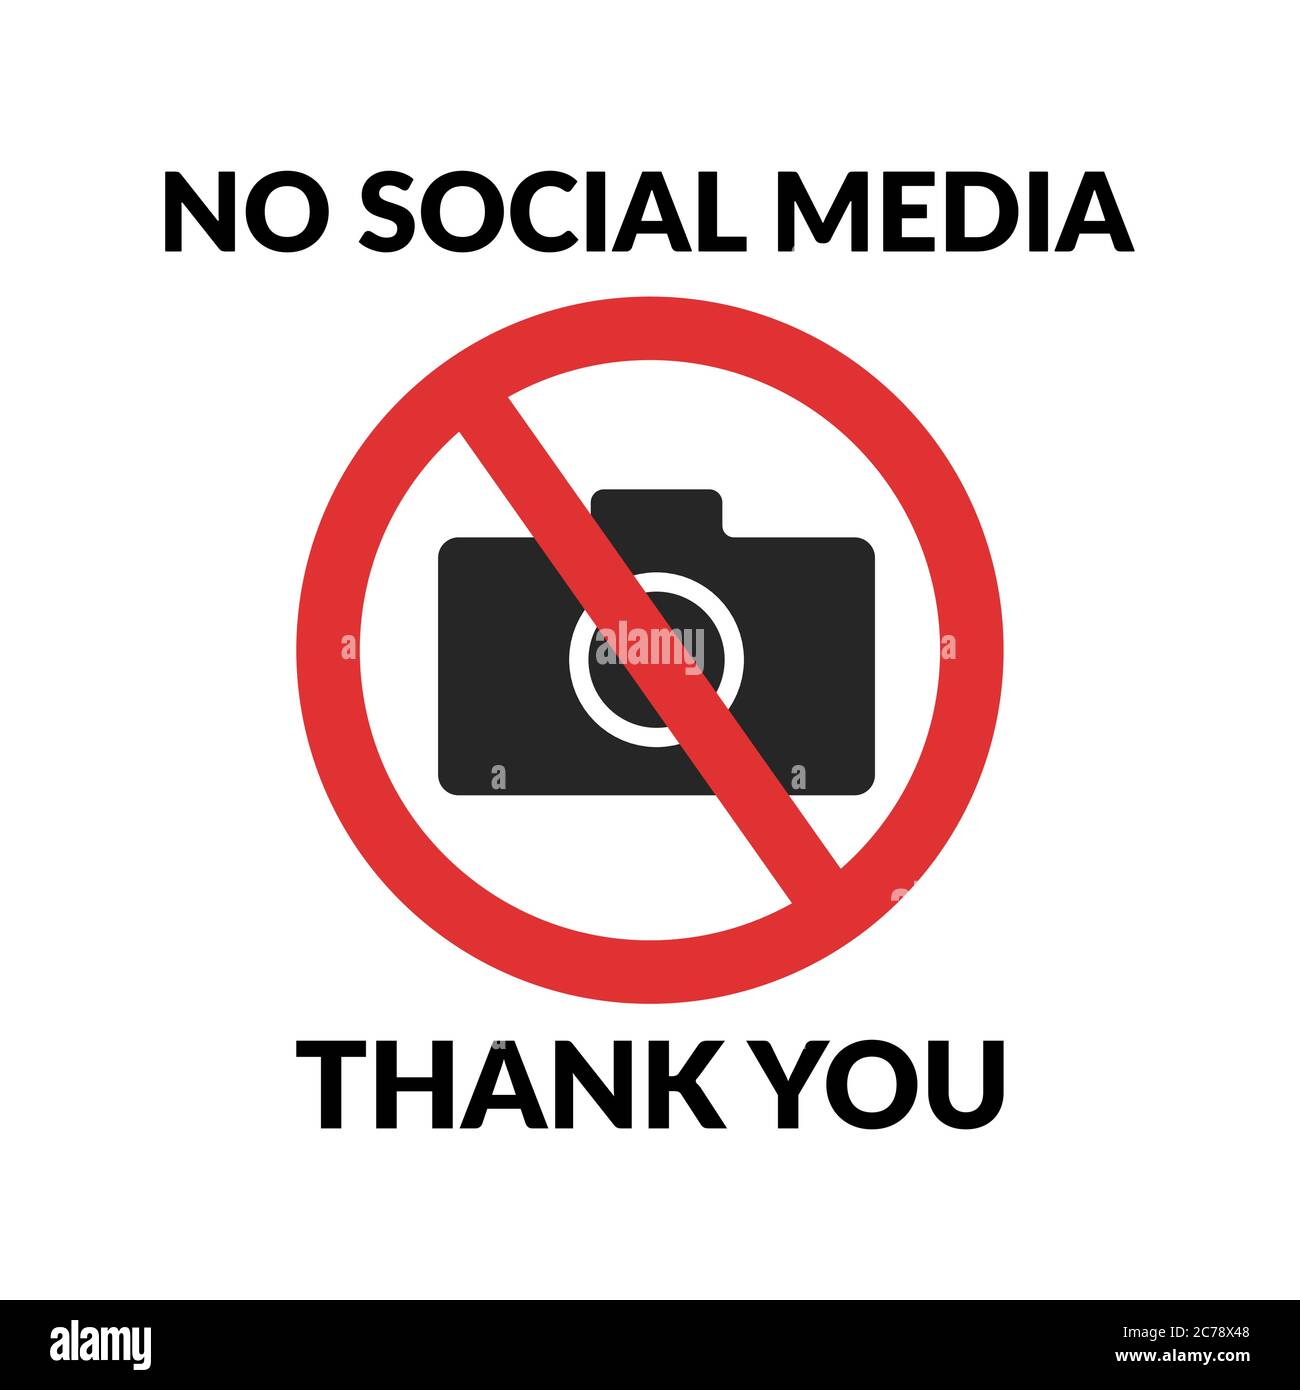 Keine sozialen Medien, danke Zitat Design für T-Shirt. Fotokamera verboten. Symbol für gesperrte Kamera. Fotos dürfen nicht aufgenommen werden Stock Vektor